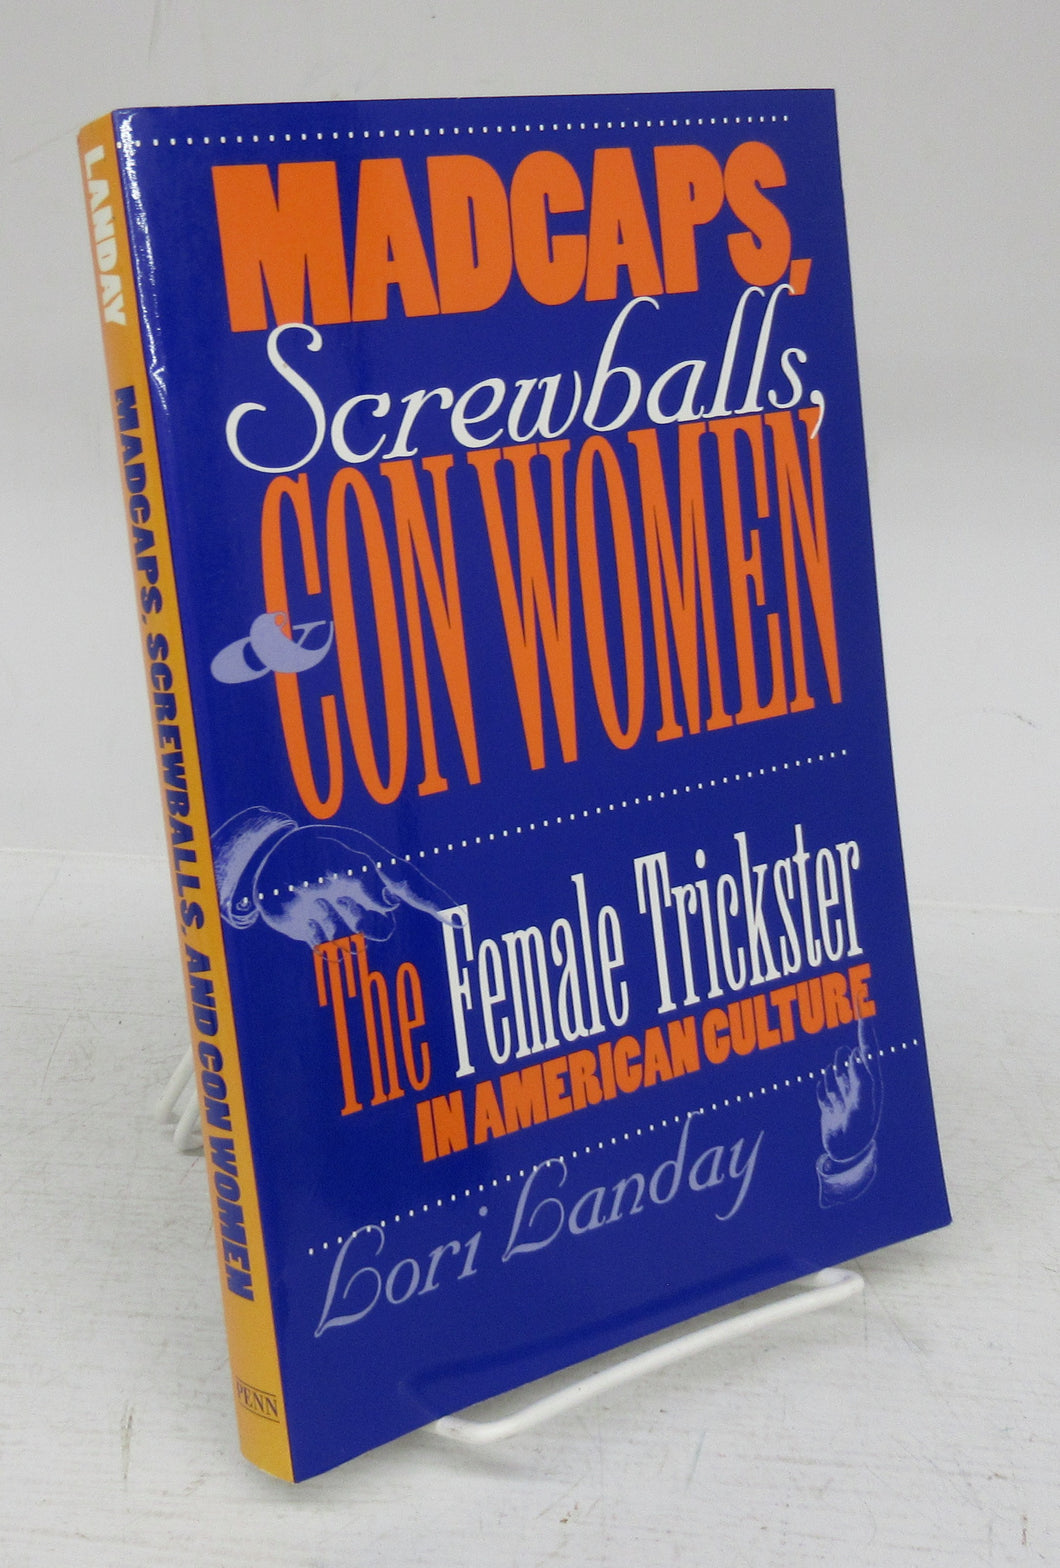 Madcaps, Screwballs, & Con Women: The Female Trickster in American Culture